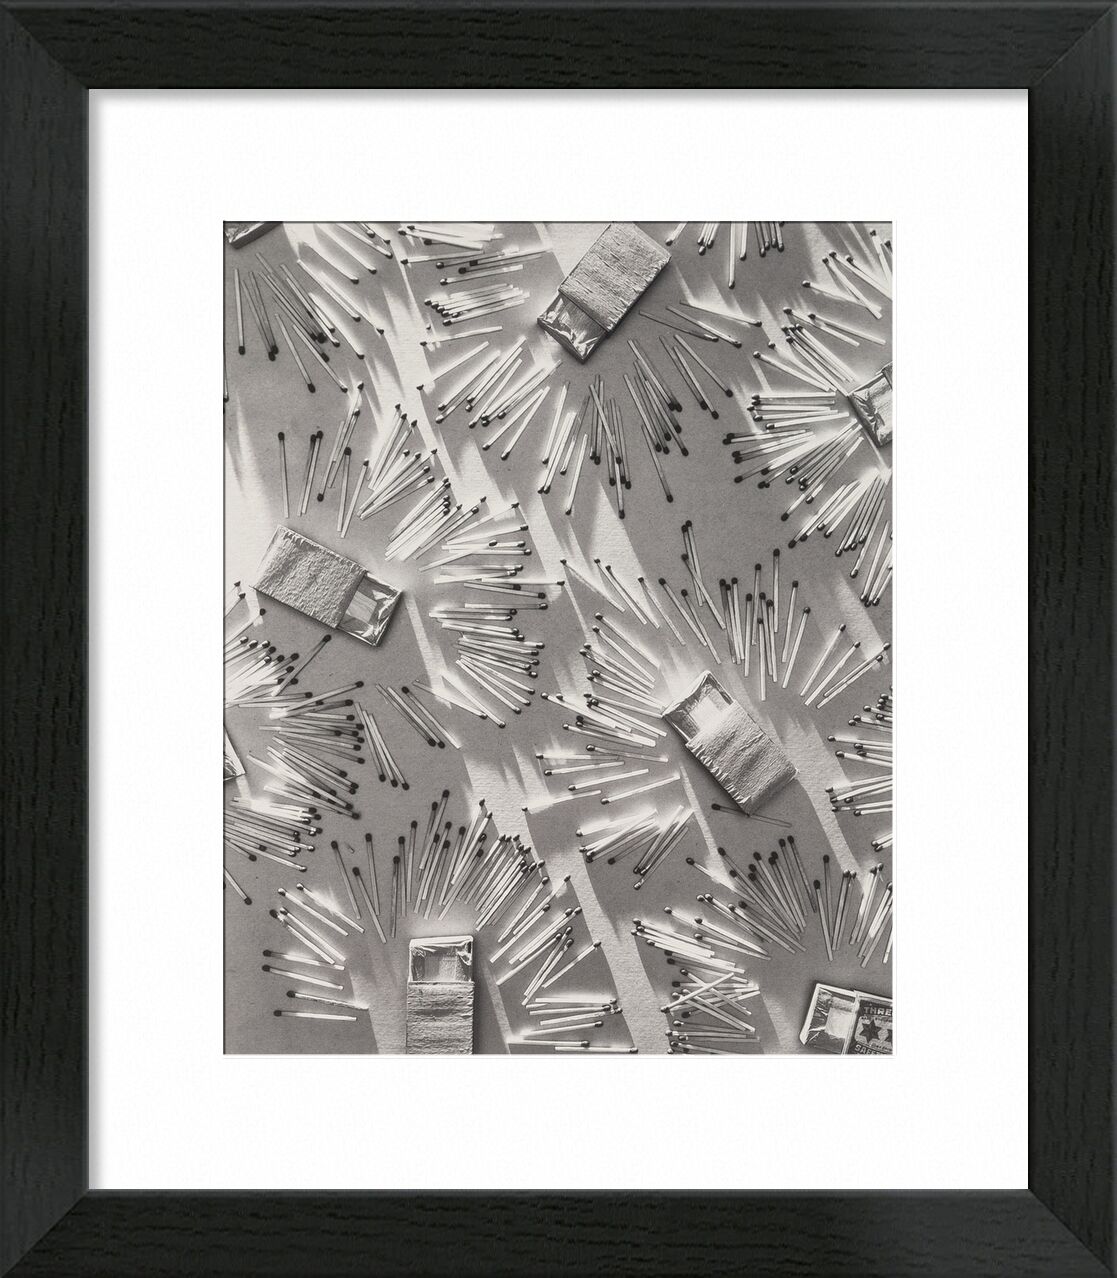 Juxtaposition - Edward Steichen von Bildende Kunst, Prodi Art, edward steichen, Steichen, Schwarz und weiß, Streichhölzer, Zigaretten, Tabakladen